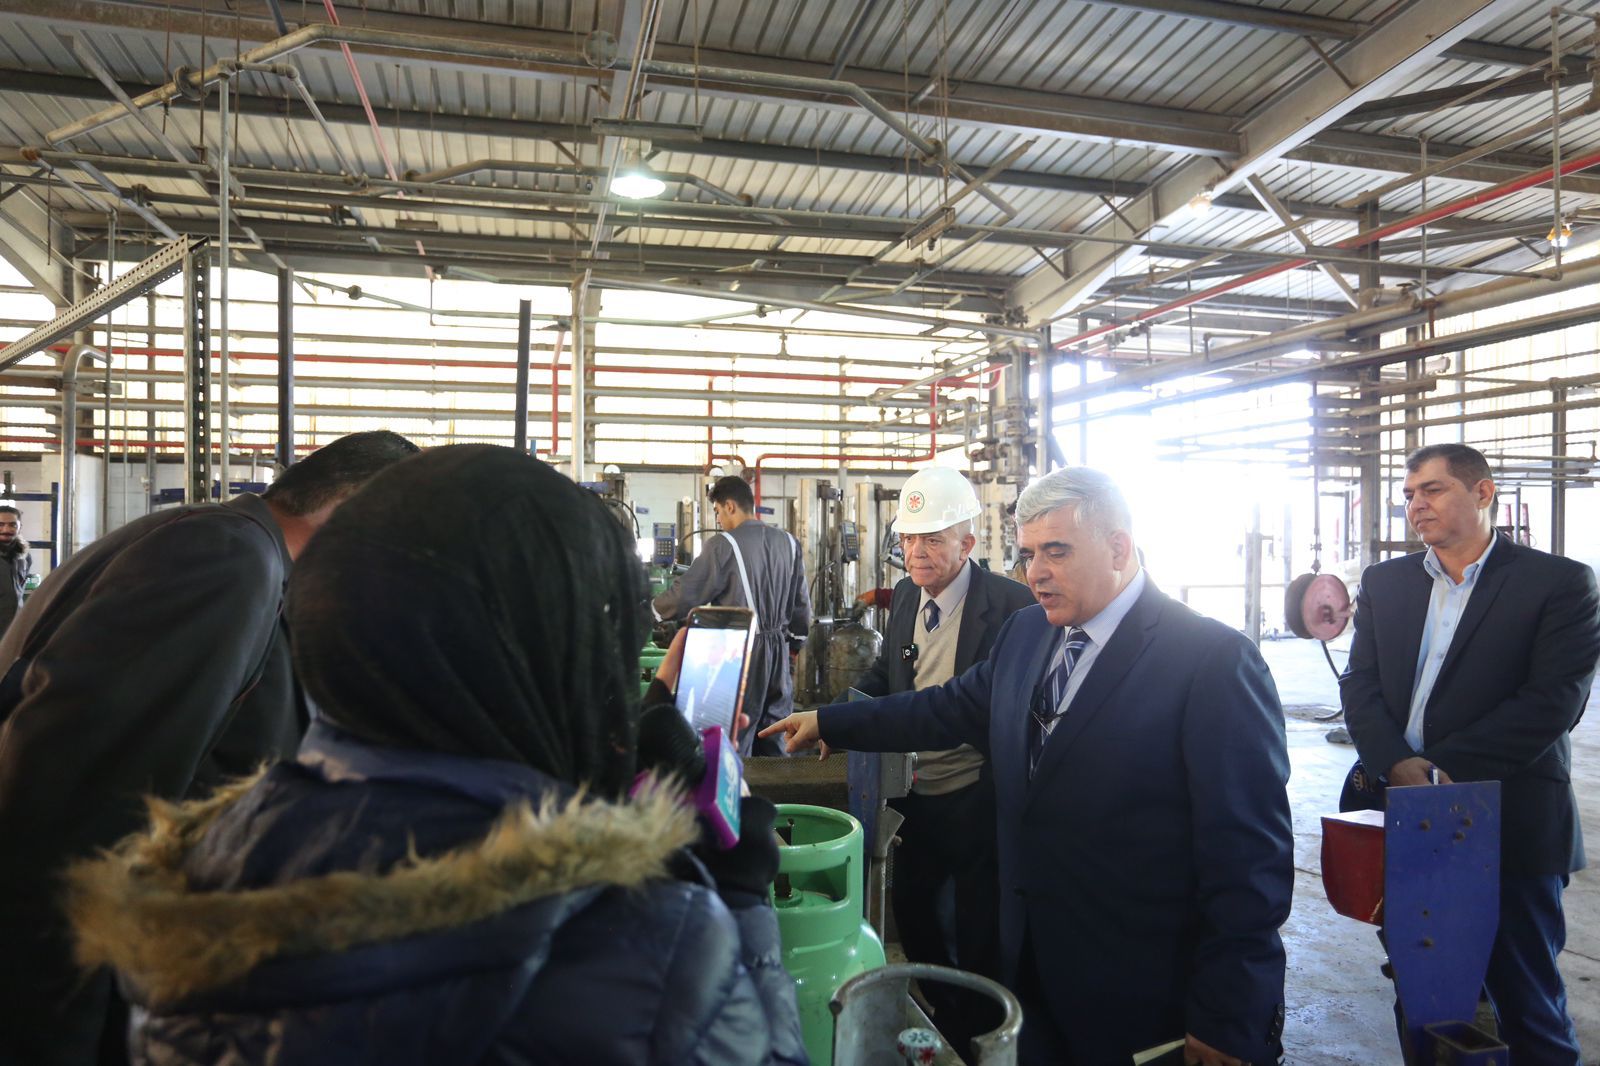 شركة مصفاة البترول الأردنية تستكمل تدشين (4) وحدات لغسيل إسطوانات الغاز احداها في محطة تعبئة غاز الزرقاء بطاقة 700 إسطوانة بالساعة